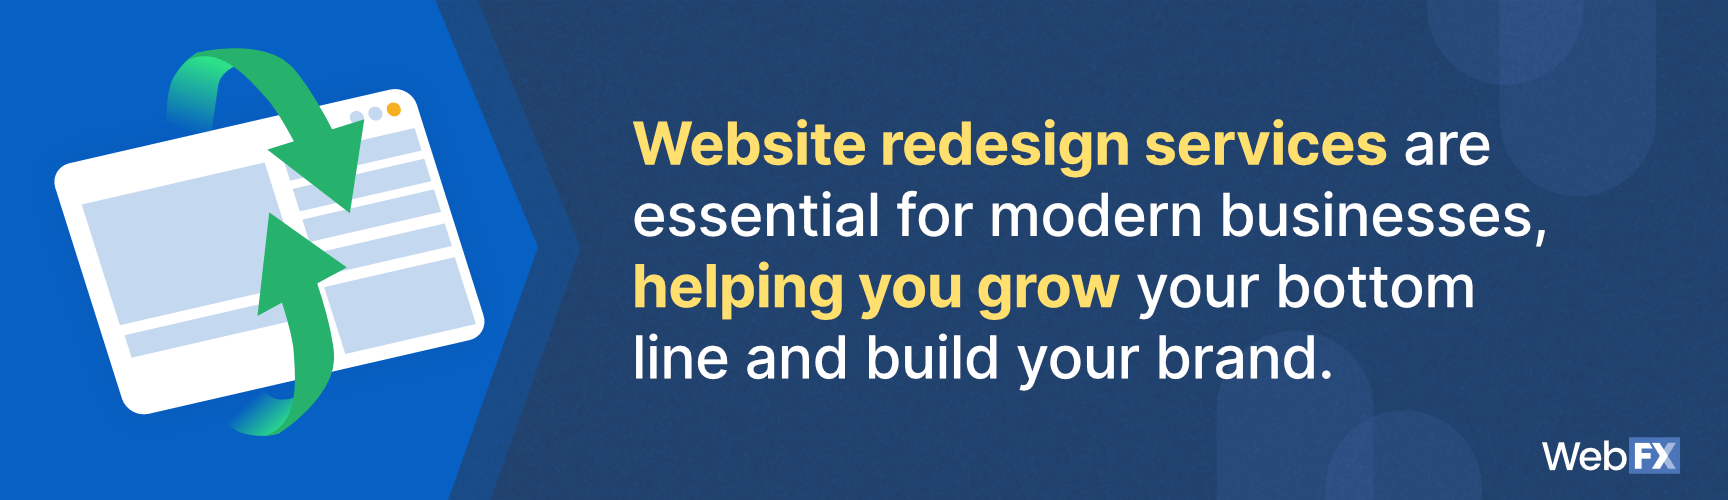 网站重新设计服务帮助现代企业提高他们的底线